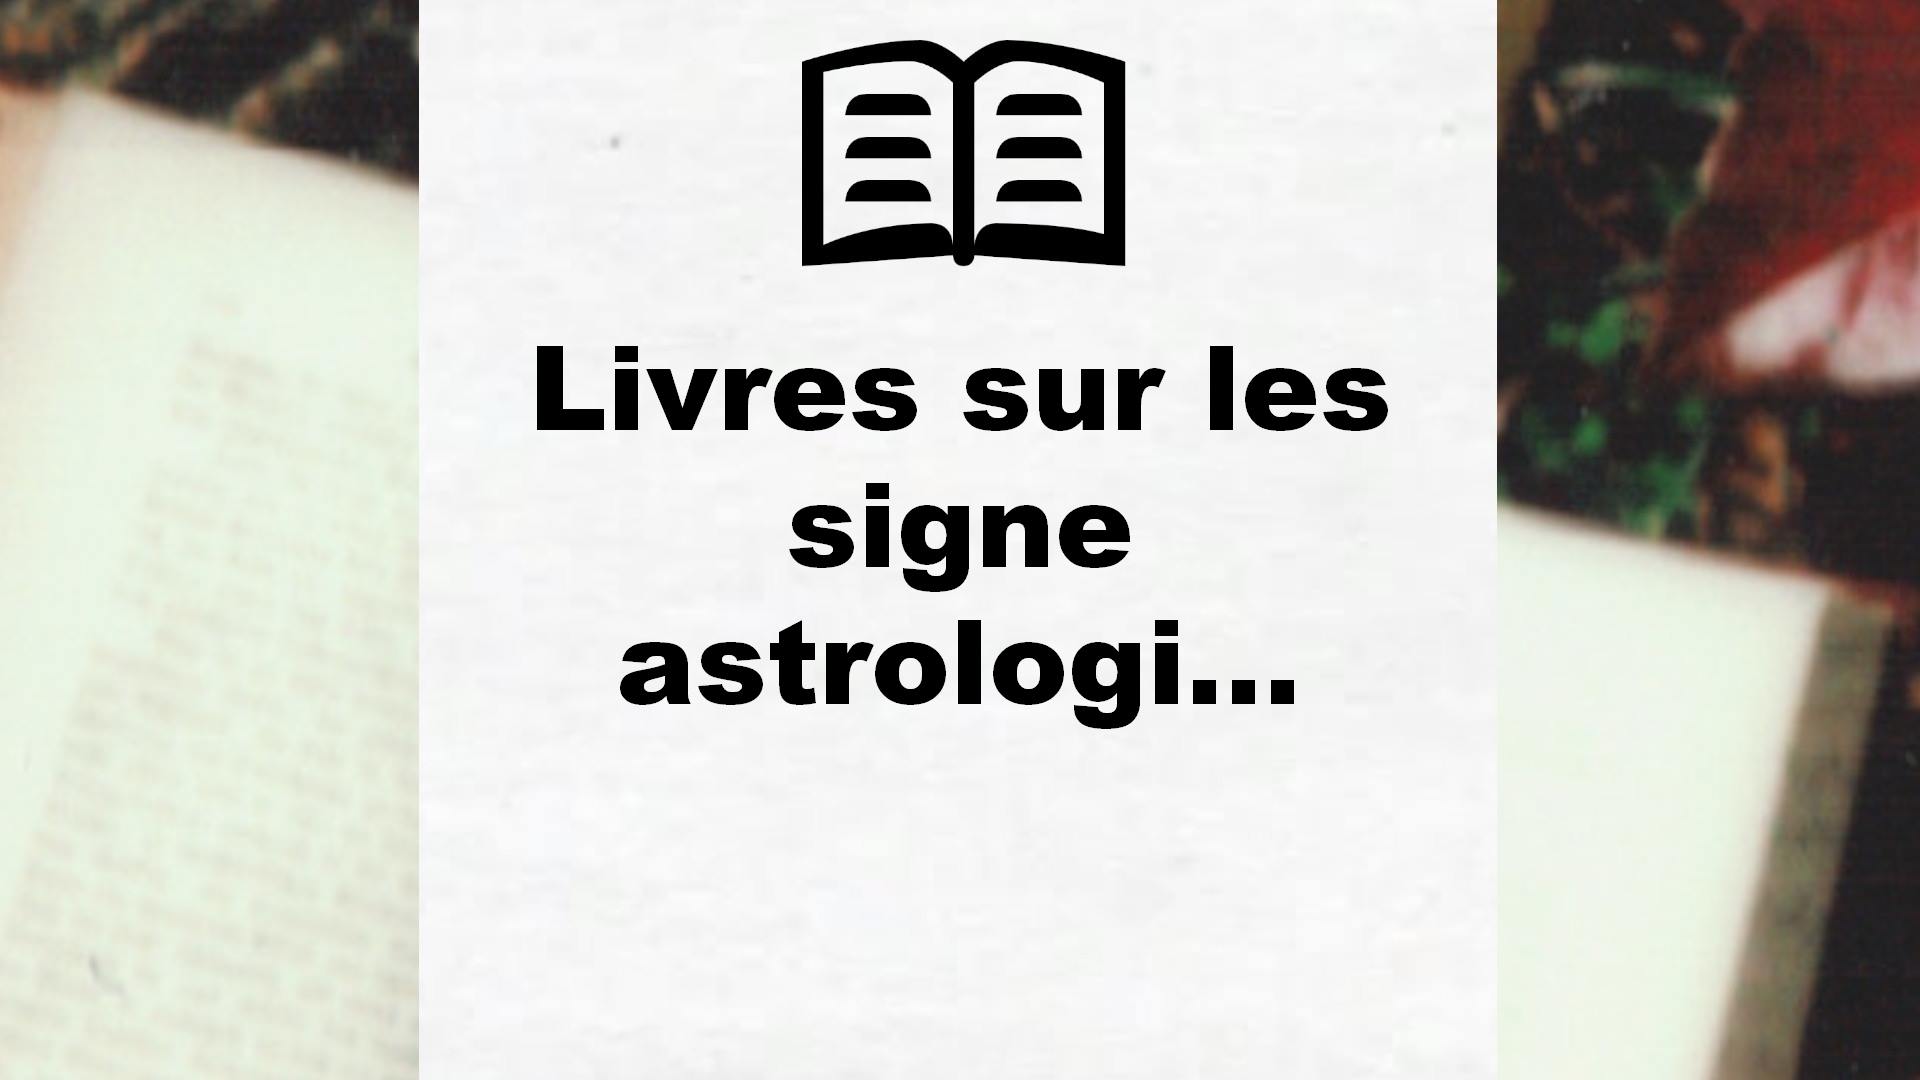 Livres sur les signe astrologique